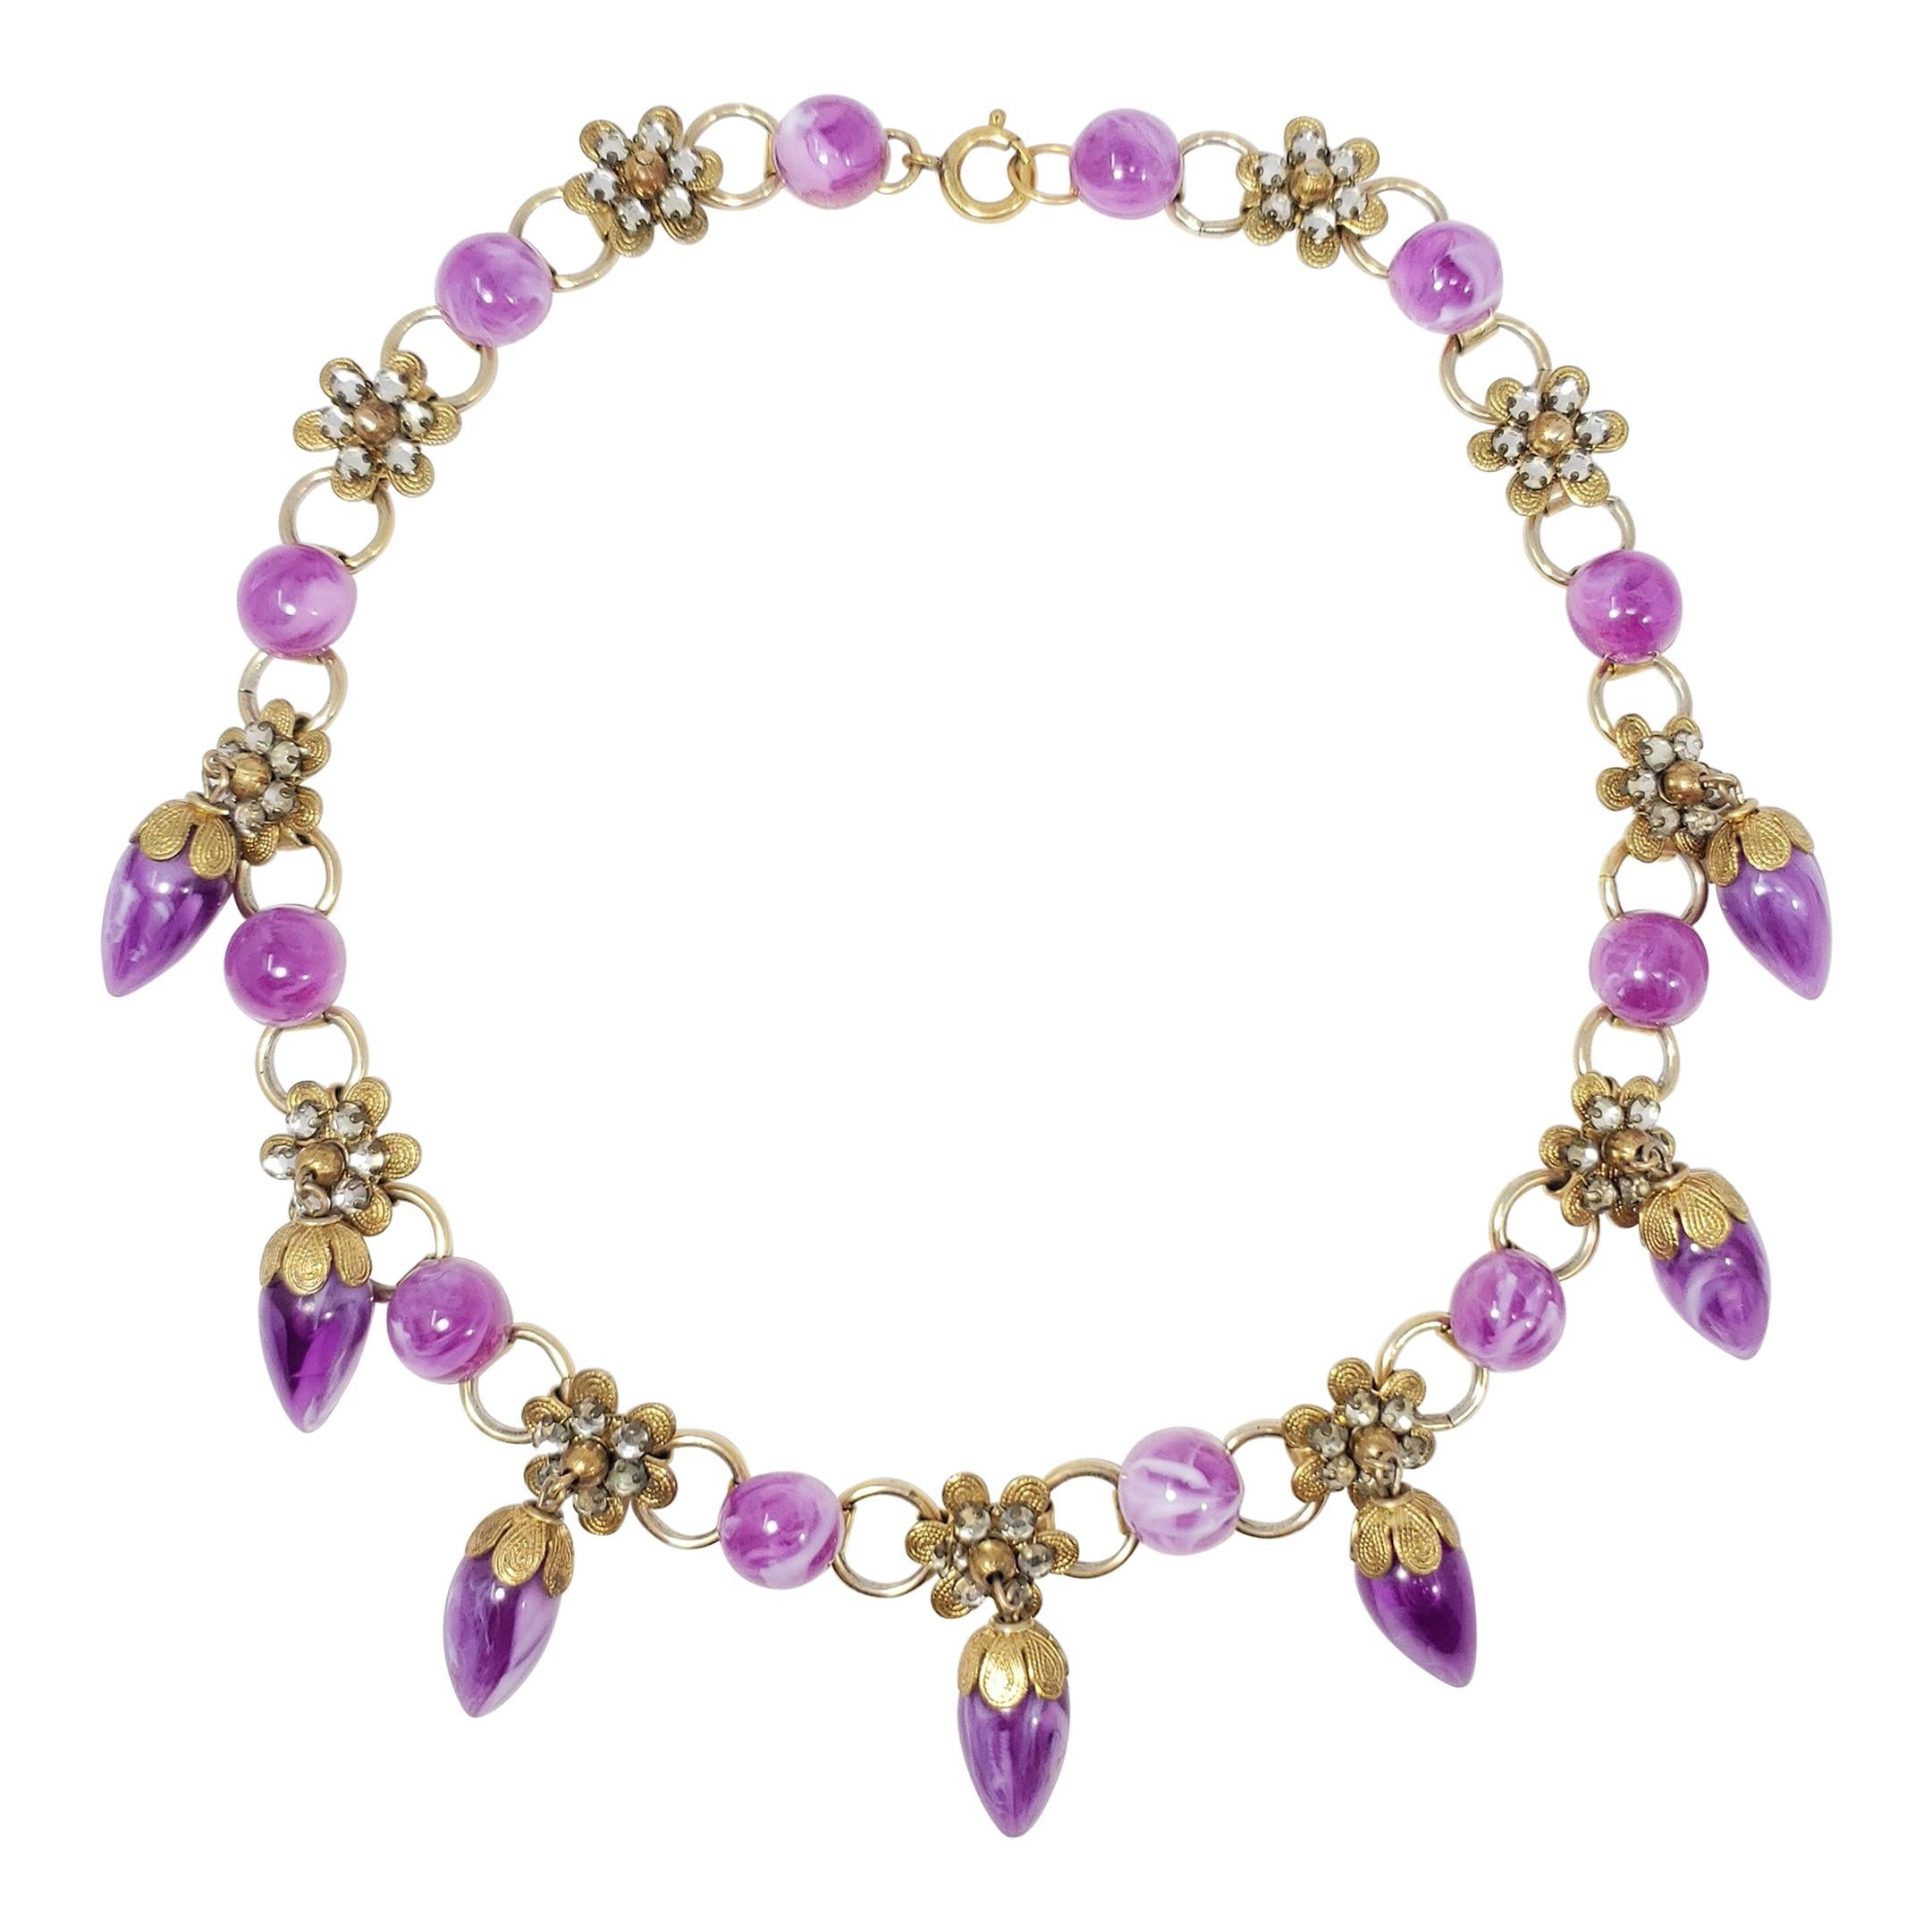 Retro Marbled Violet Dangling Crystal Flower Necklace, Gold For Sale